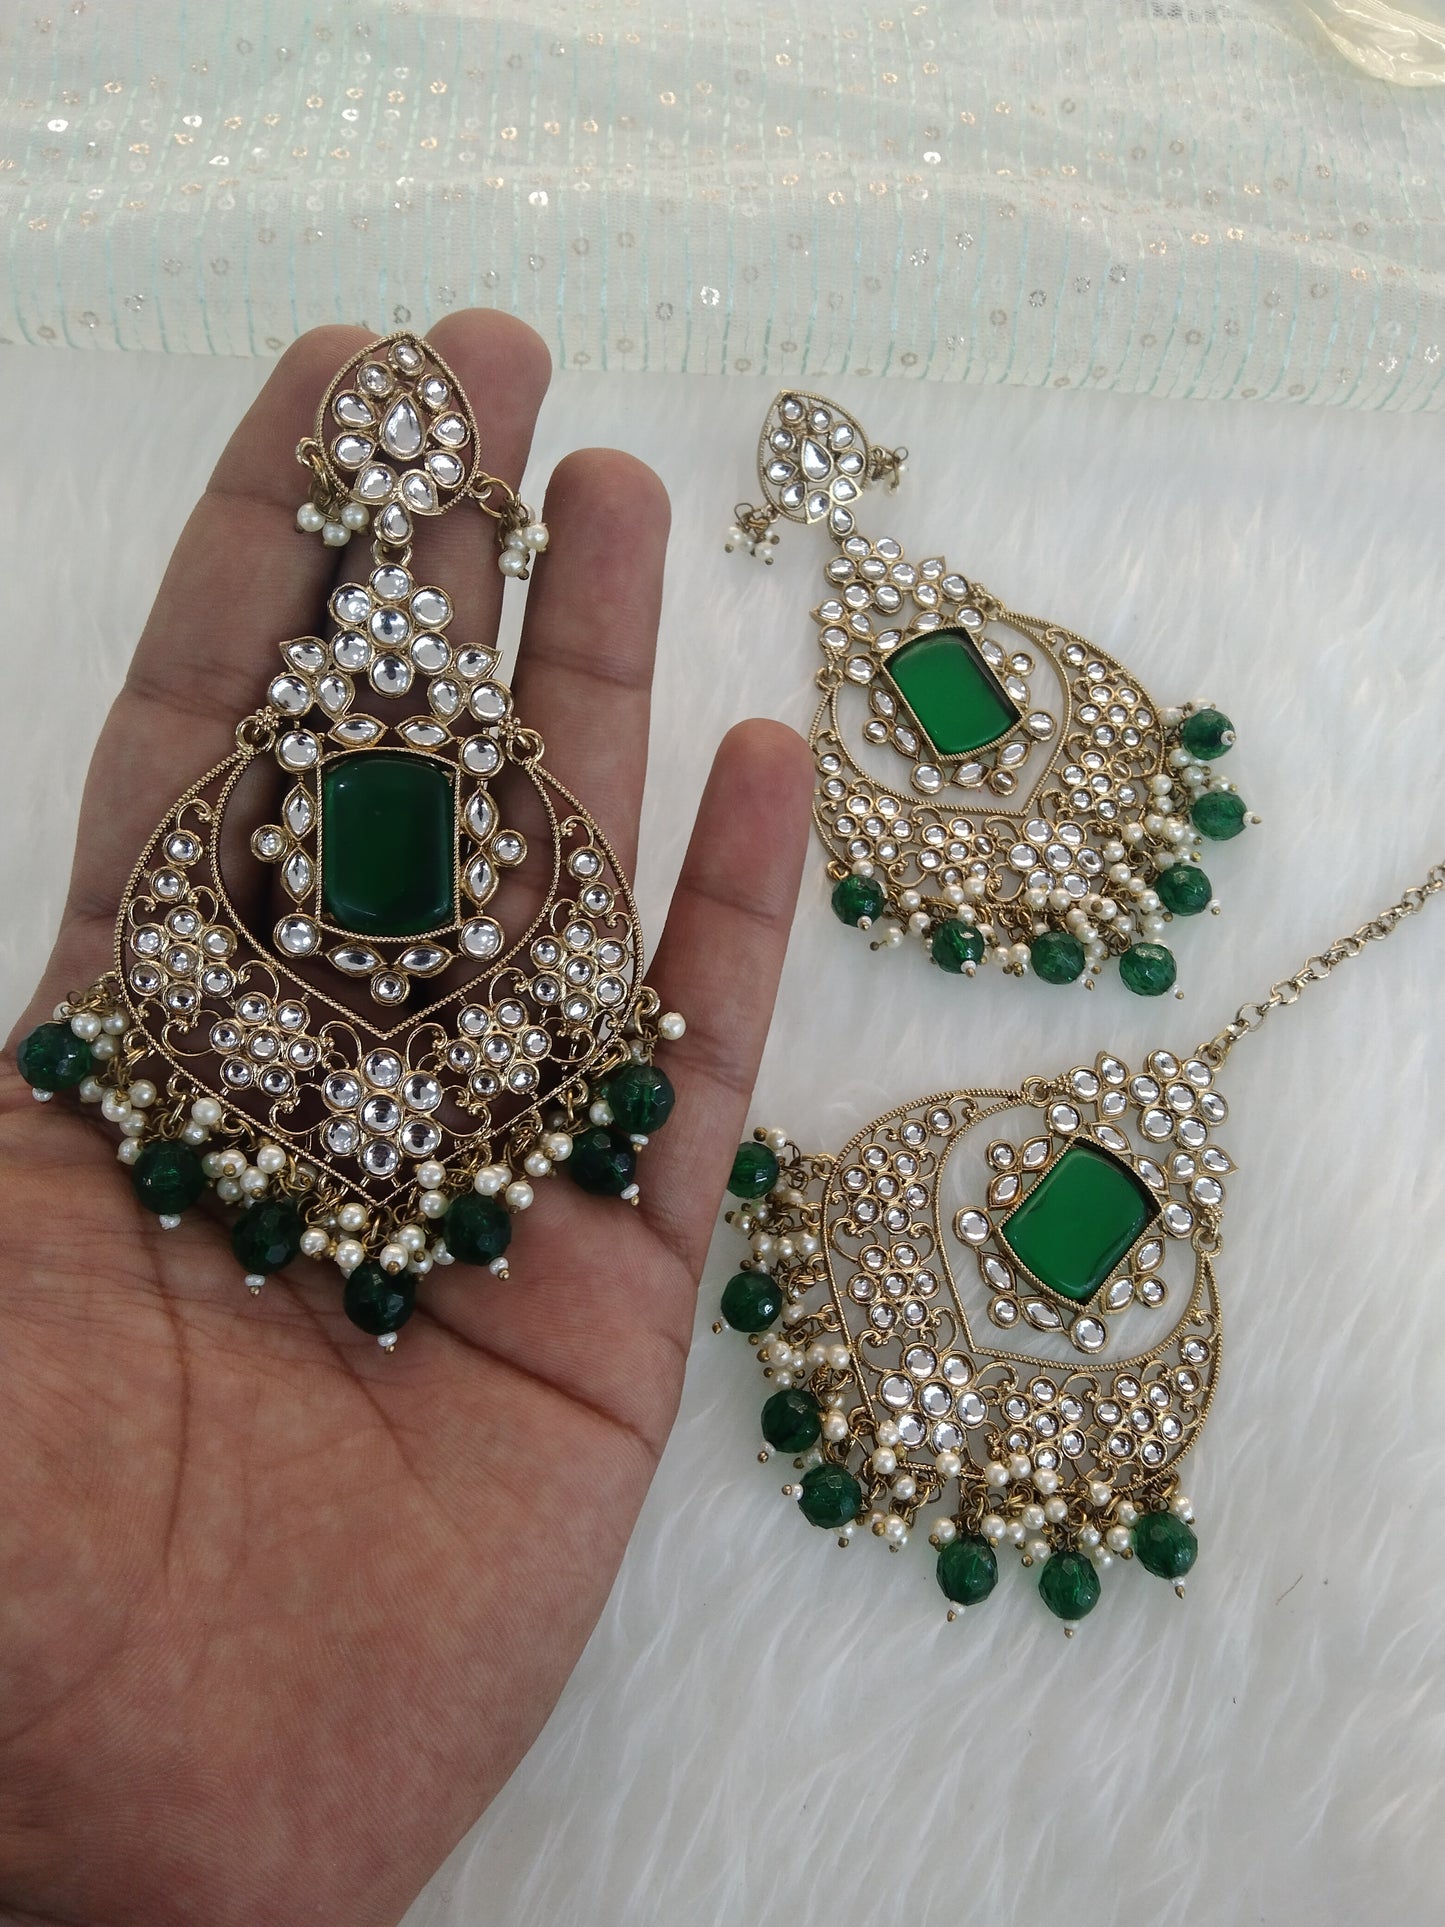 Indian Kundan Earrings Jewellery/Green Kundan Earrings tikka set/ bollywood Earrings say Set